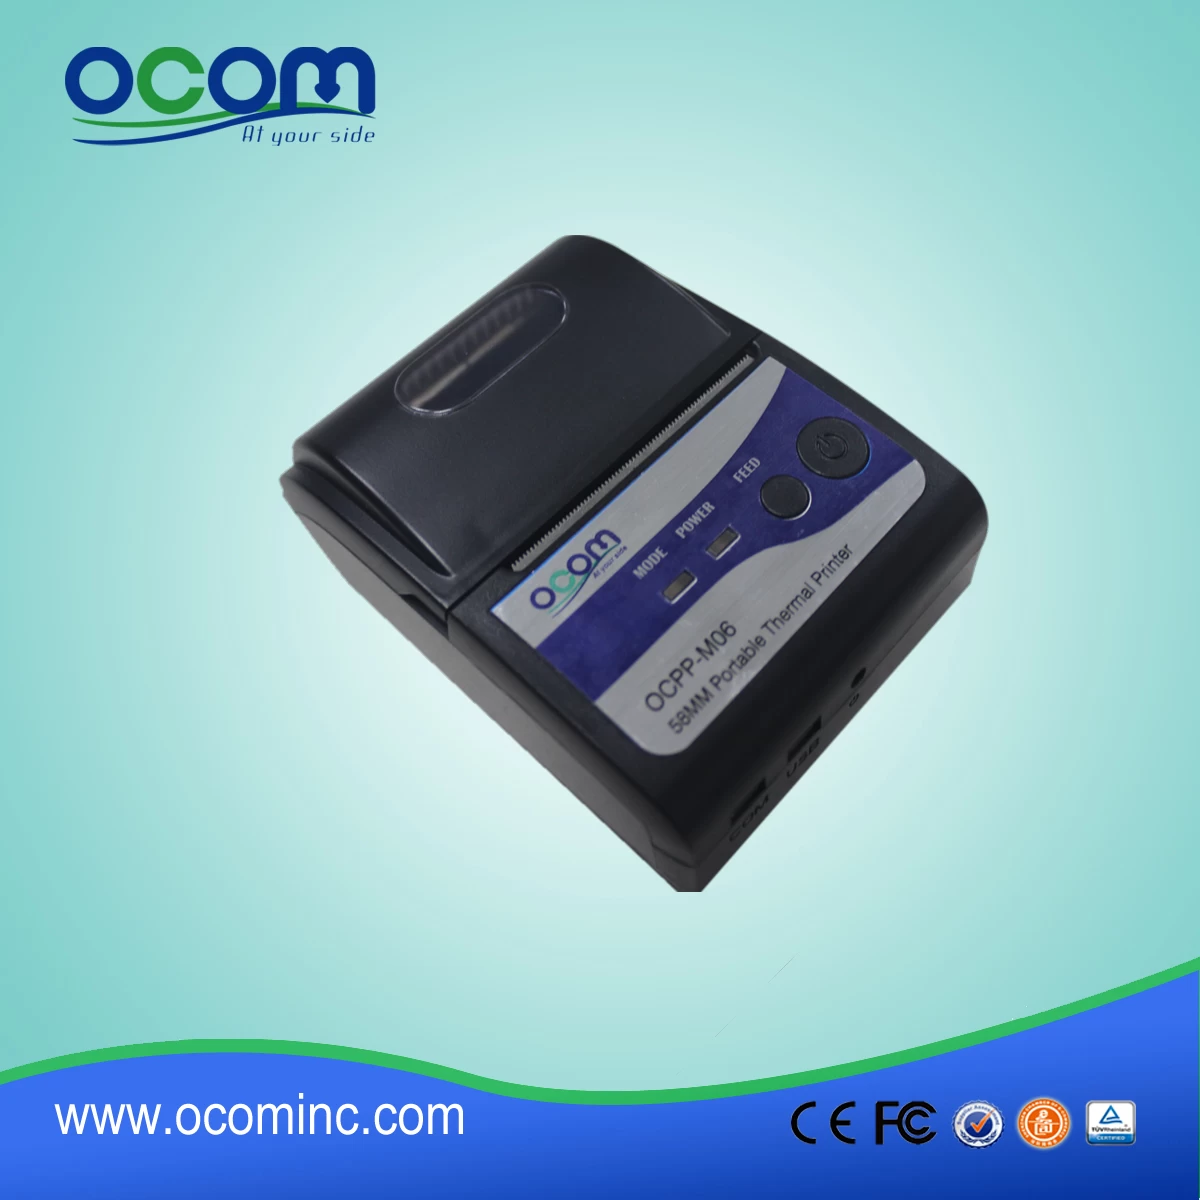 OCPP-M06: Chinese cheapeast OCOM 58mm pos printer,pos printer 58mm